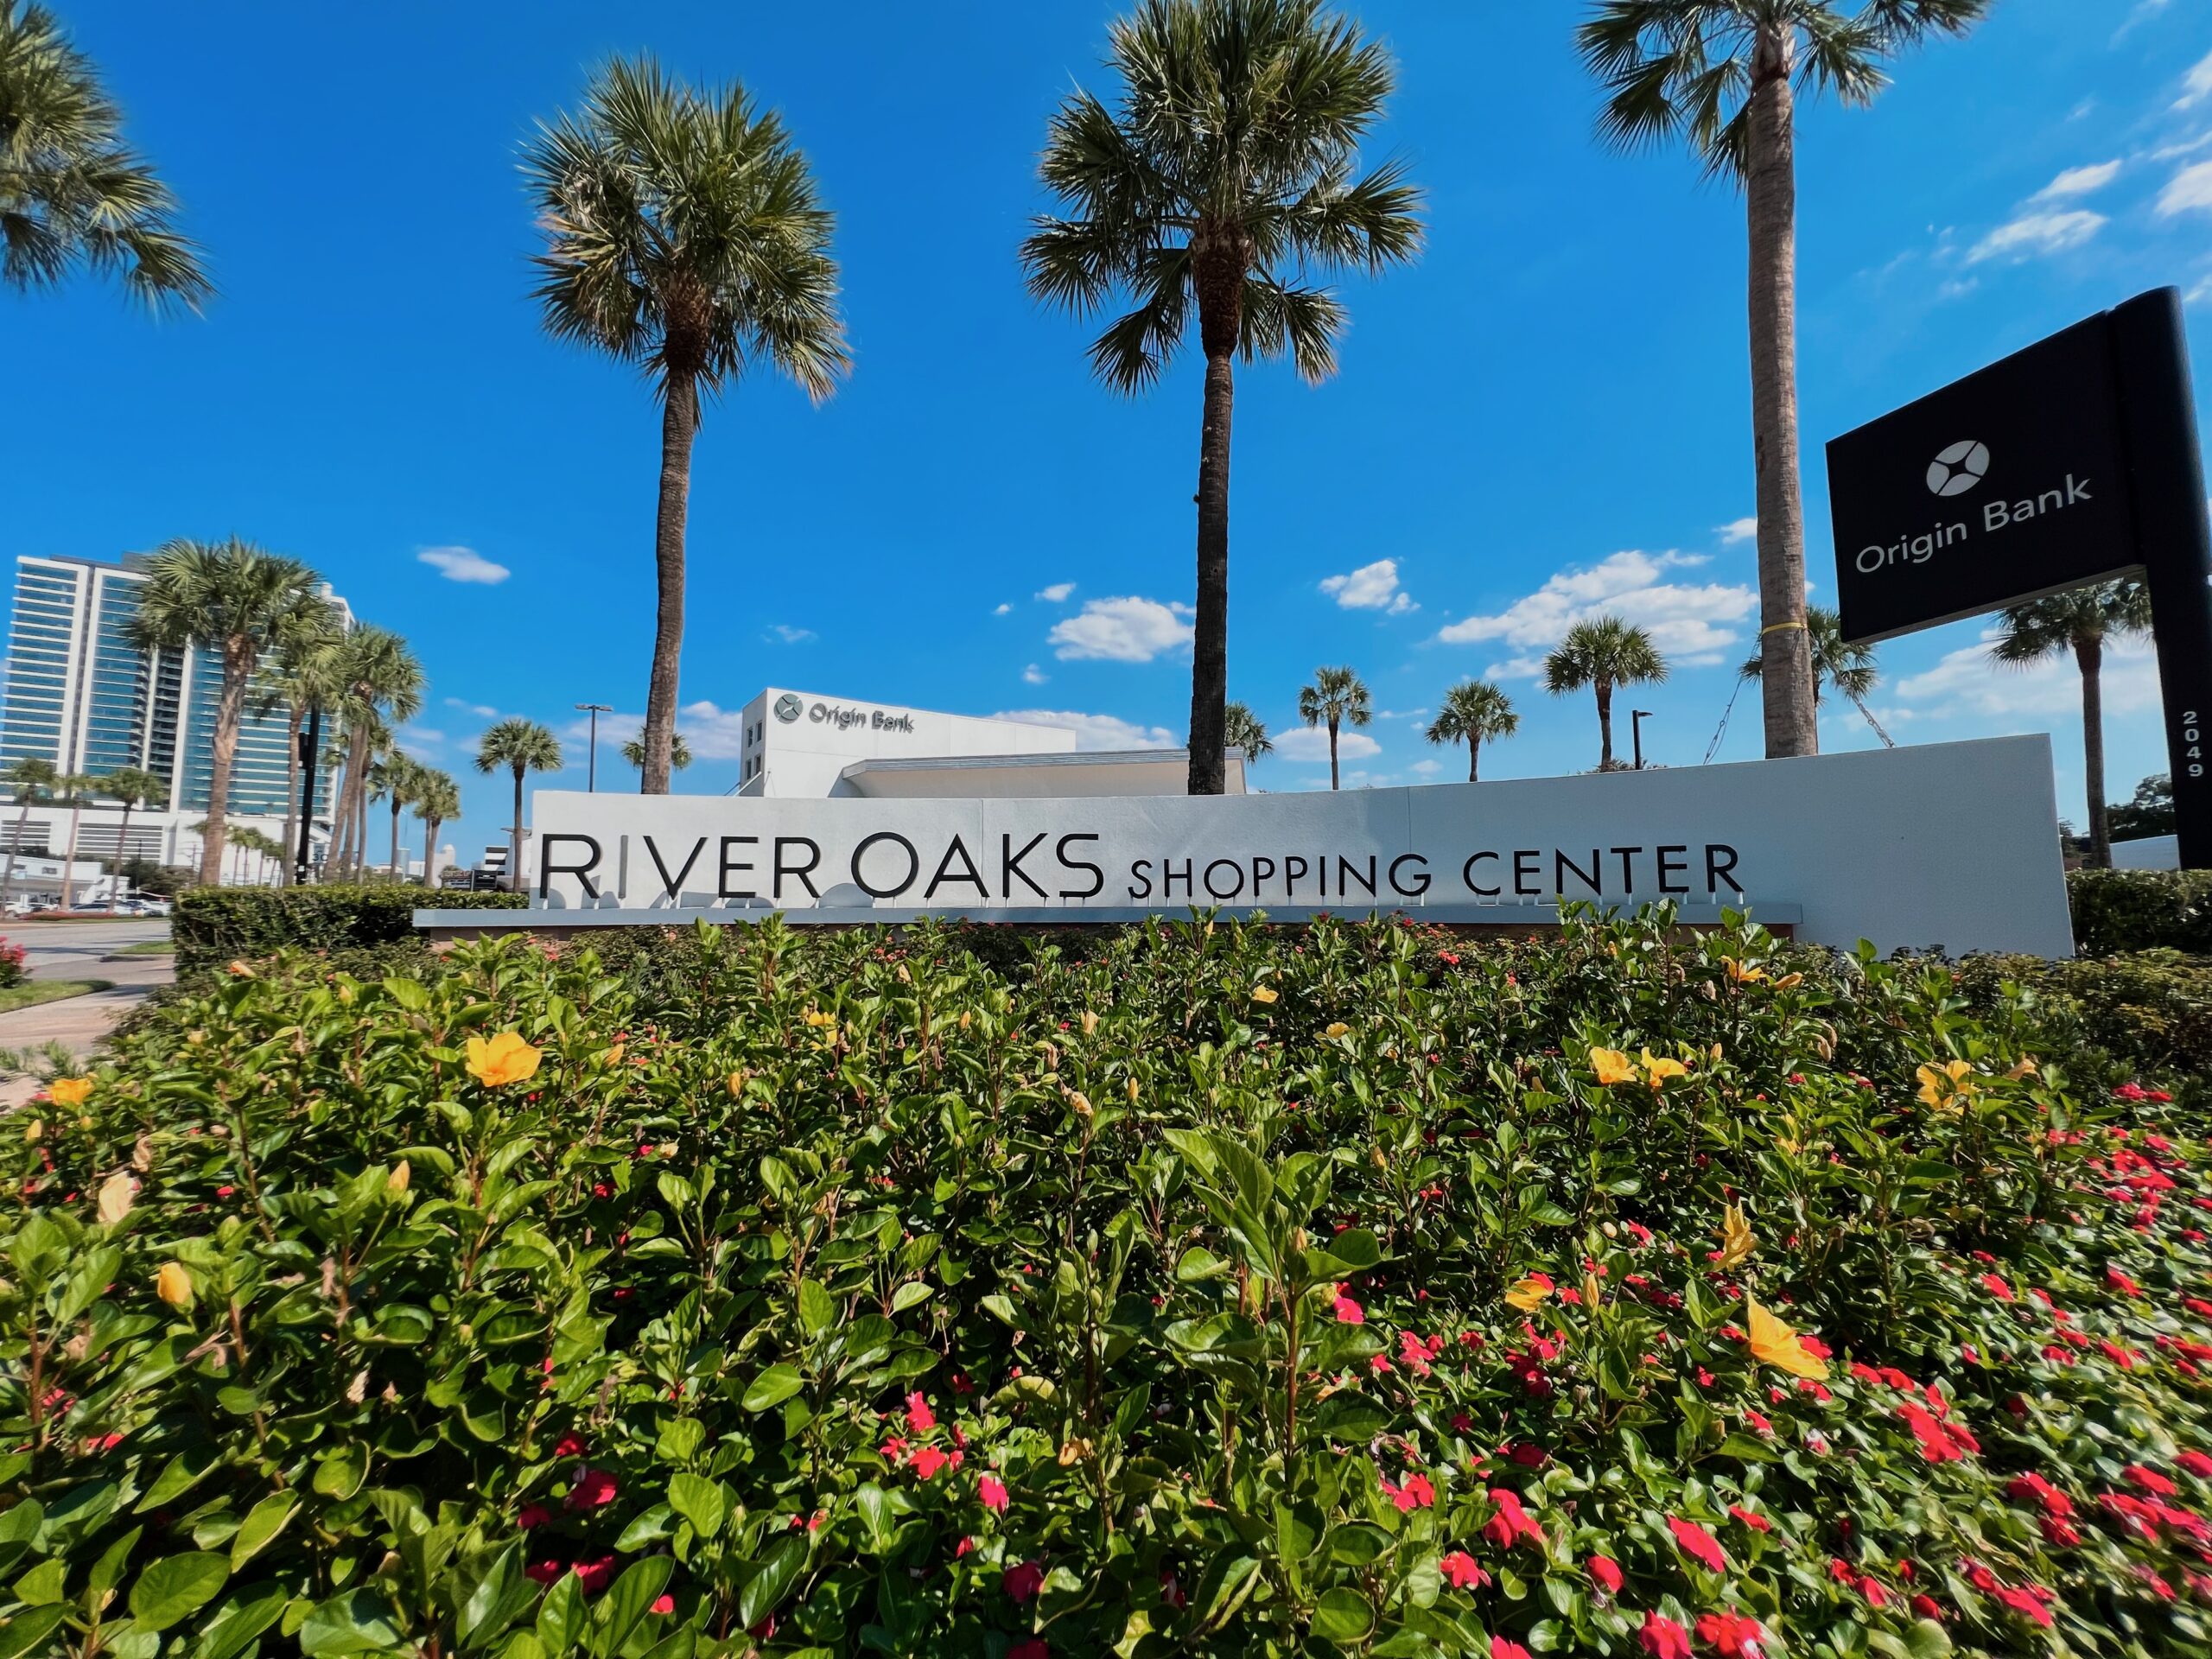 River Oaks Shopping Center